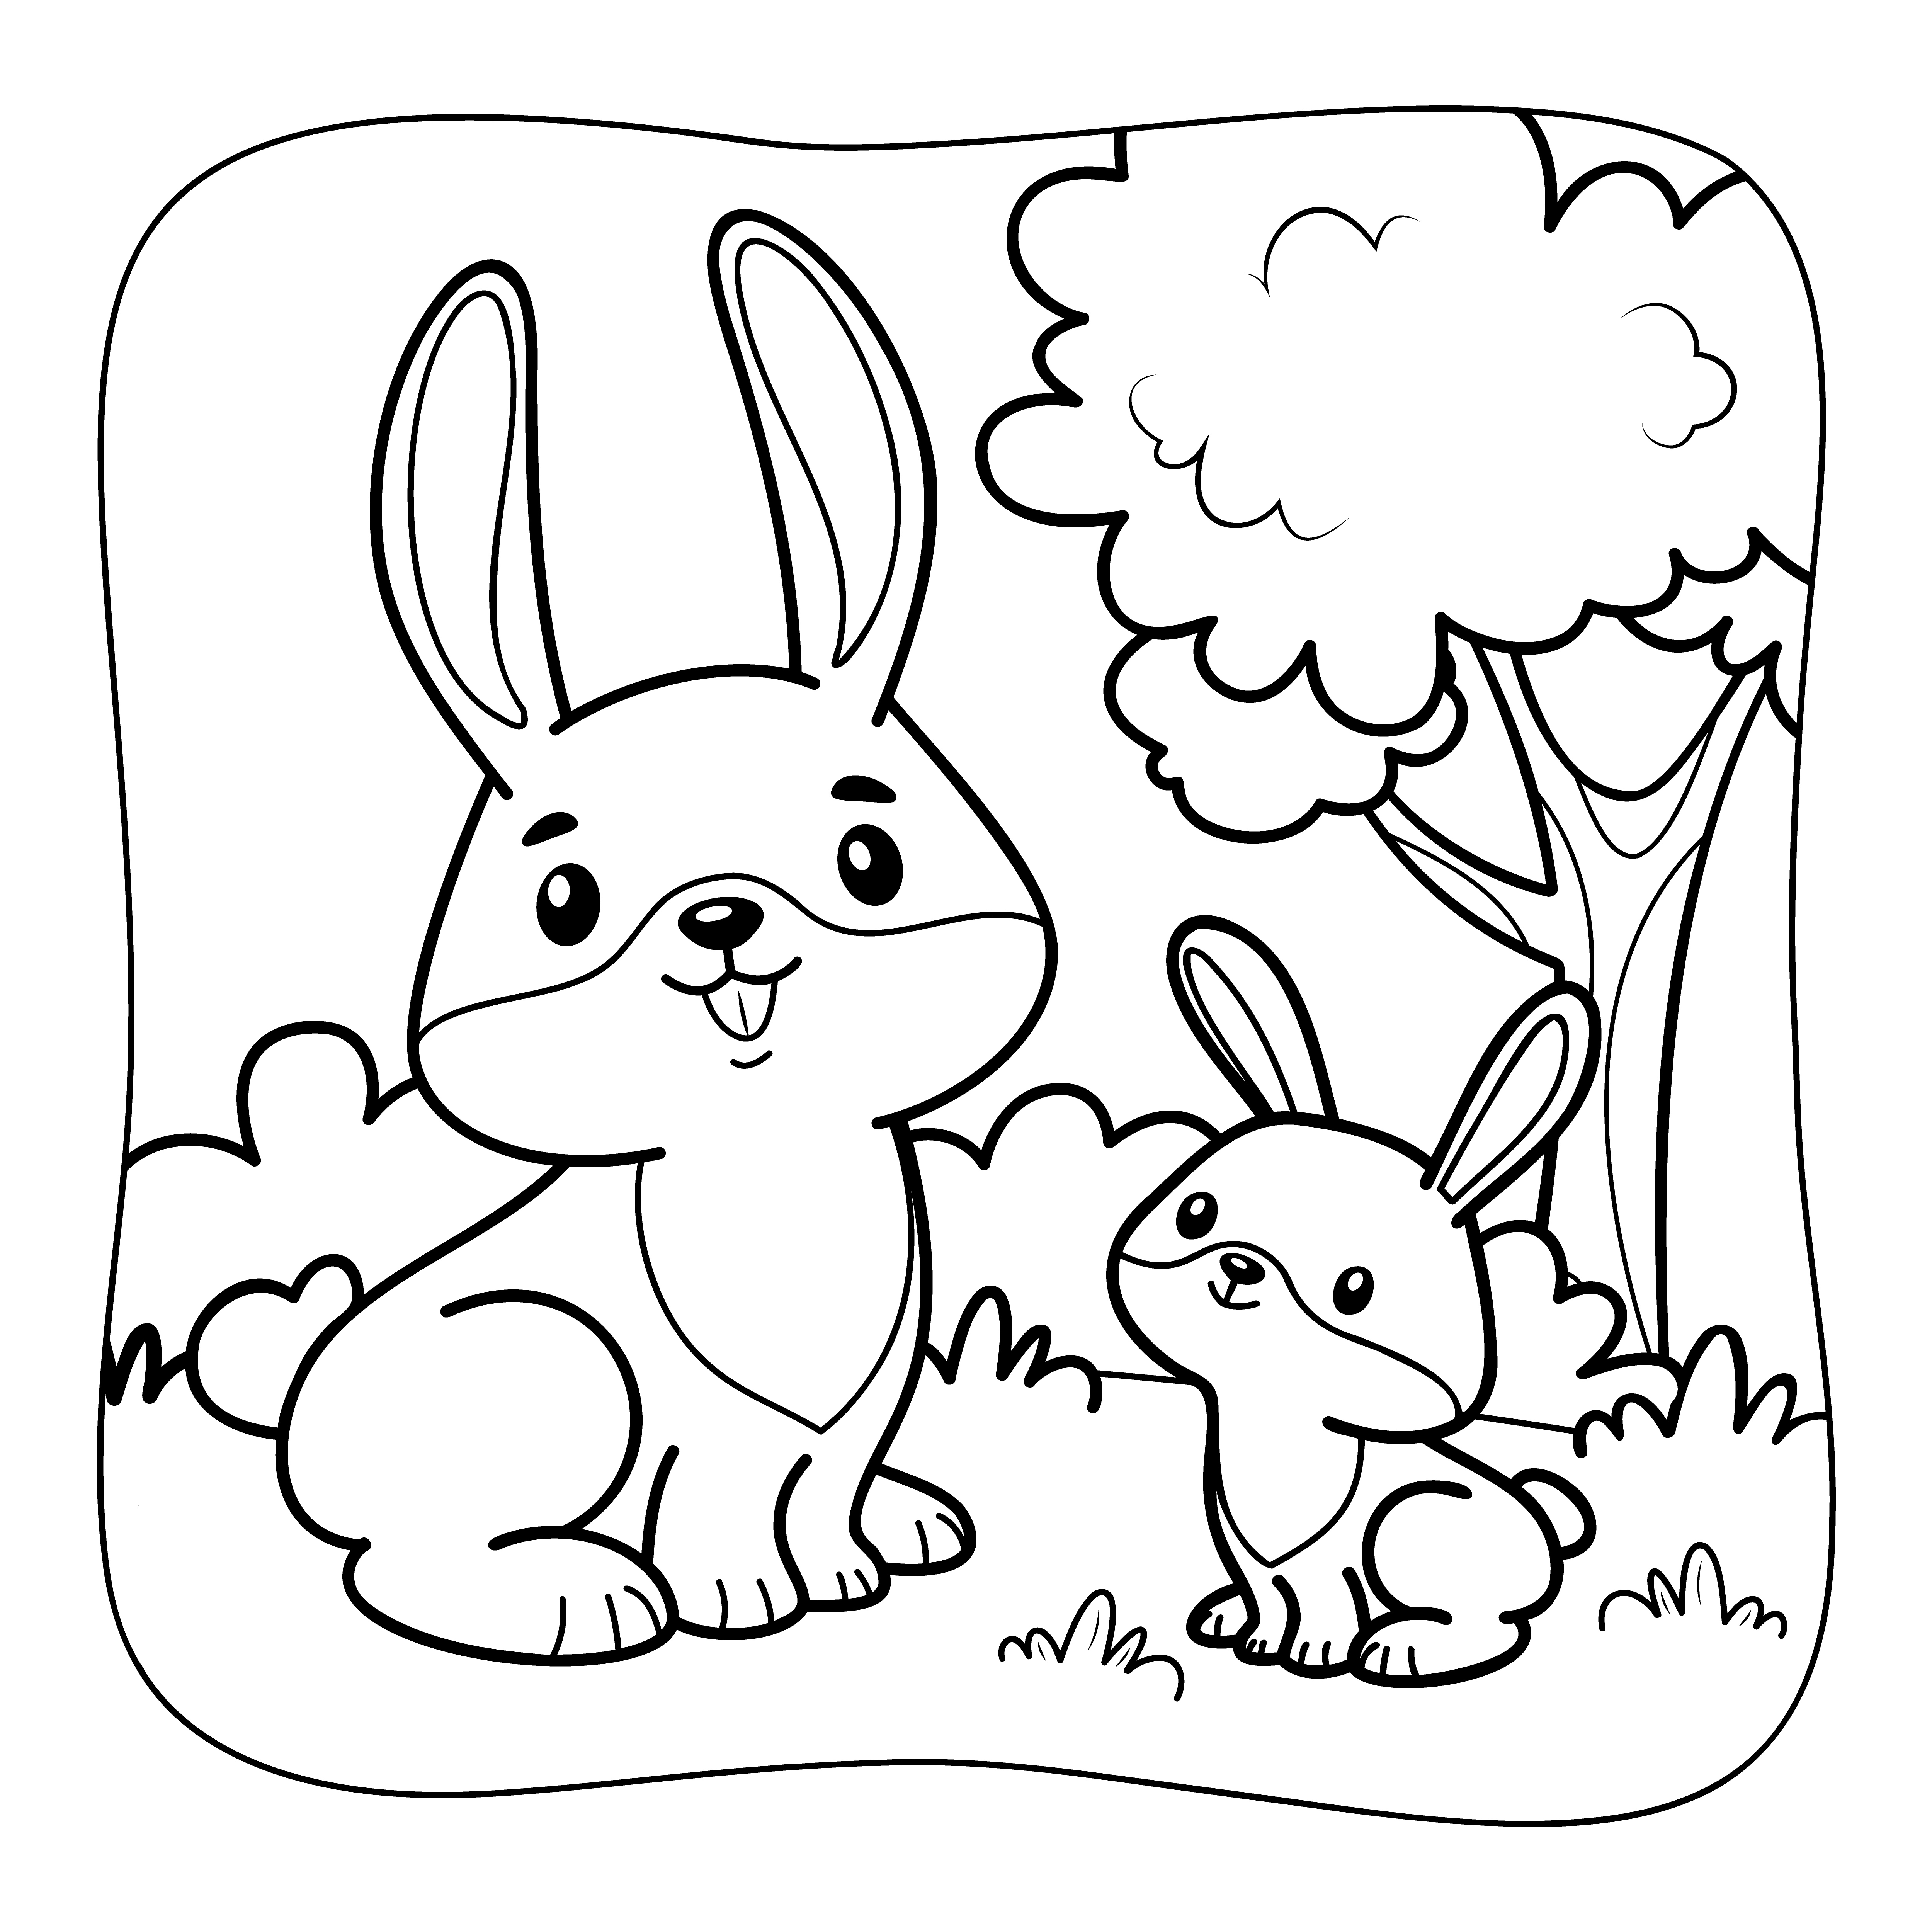 Раскраска кролики друзья рядом с дубом формата А4 в высоком качестве